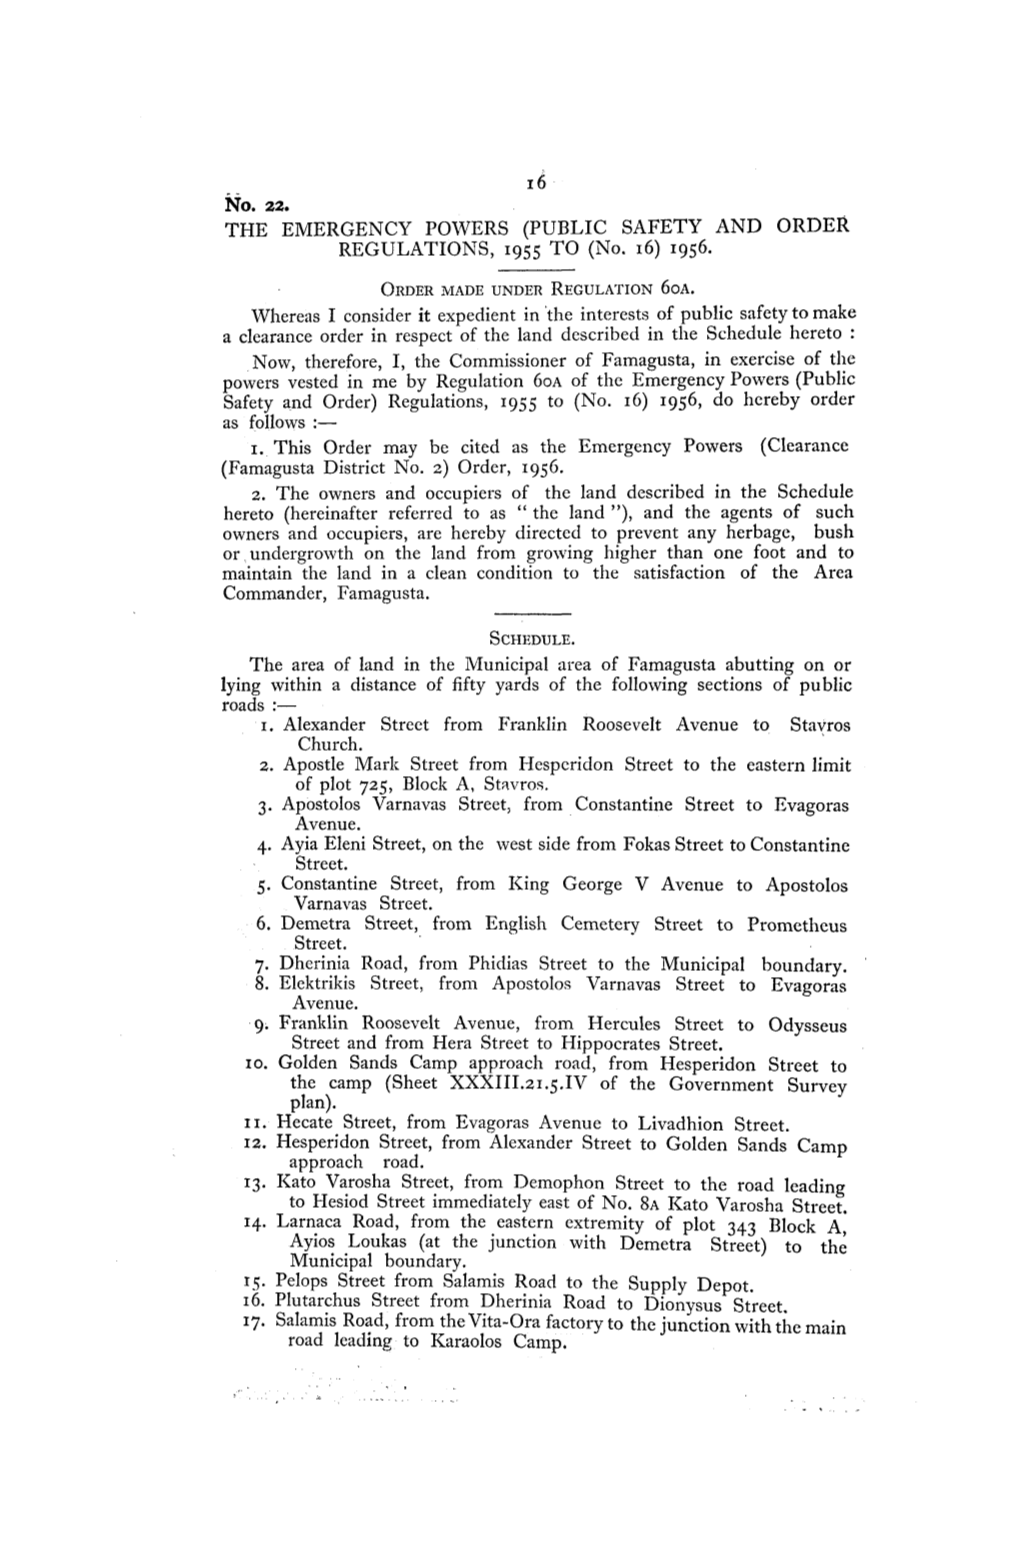 Νθ. 22. the EMERGENCY POWERS (PUBLIC SAFETY and ORDER REGULATIONS, 1955 to (No